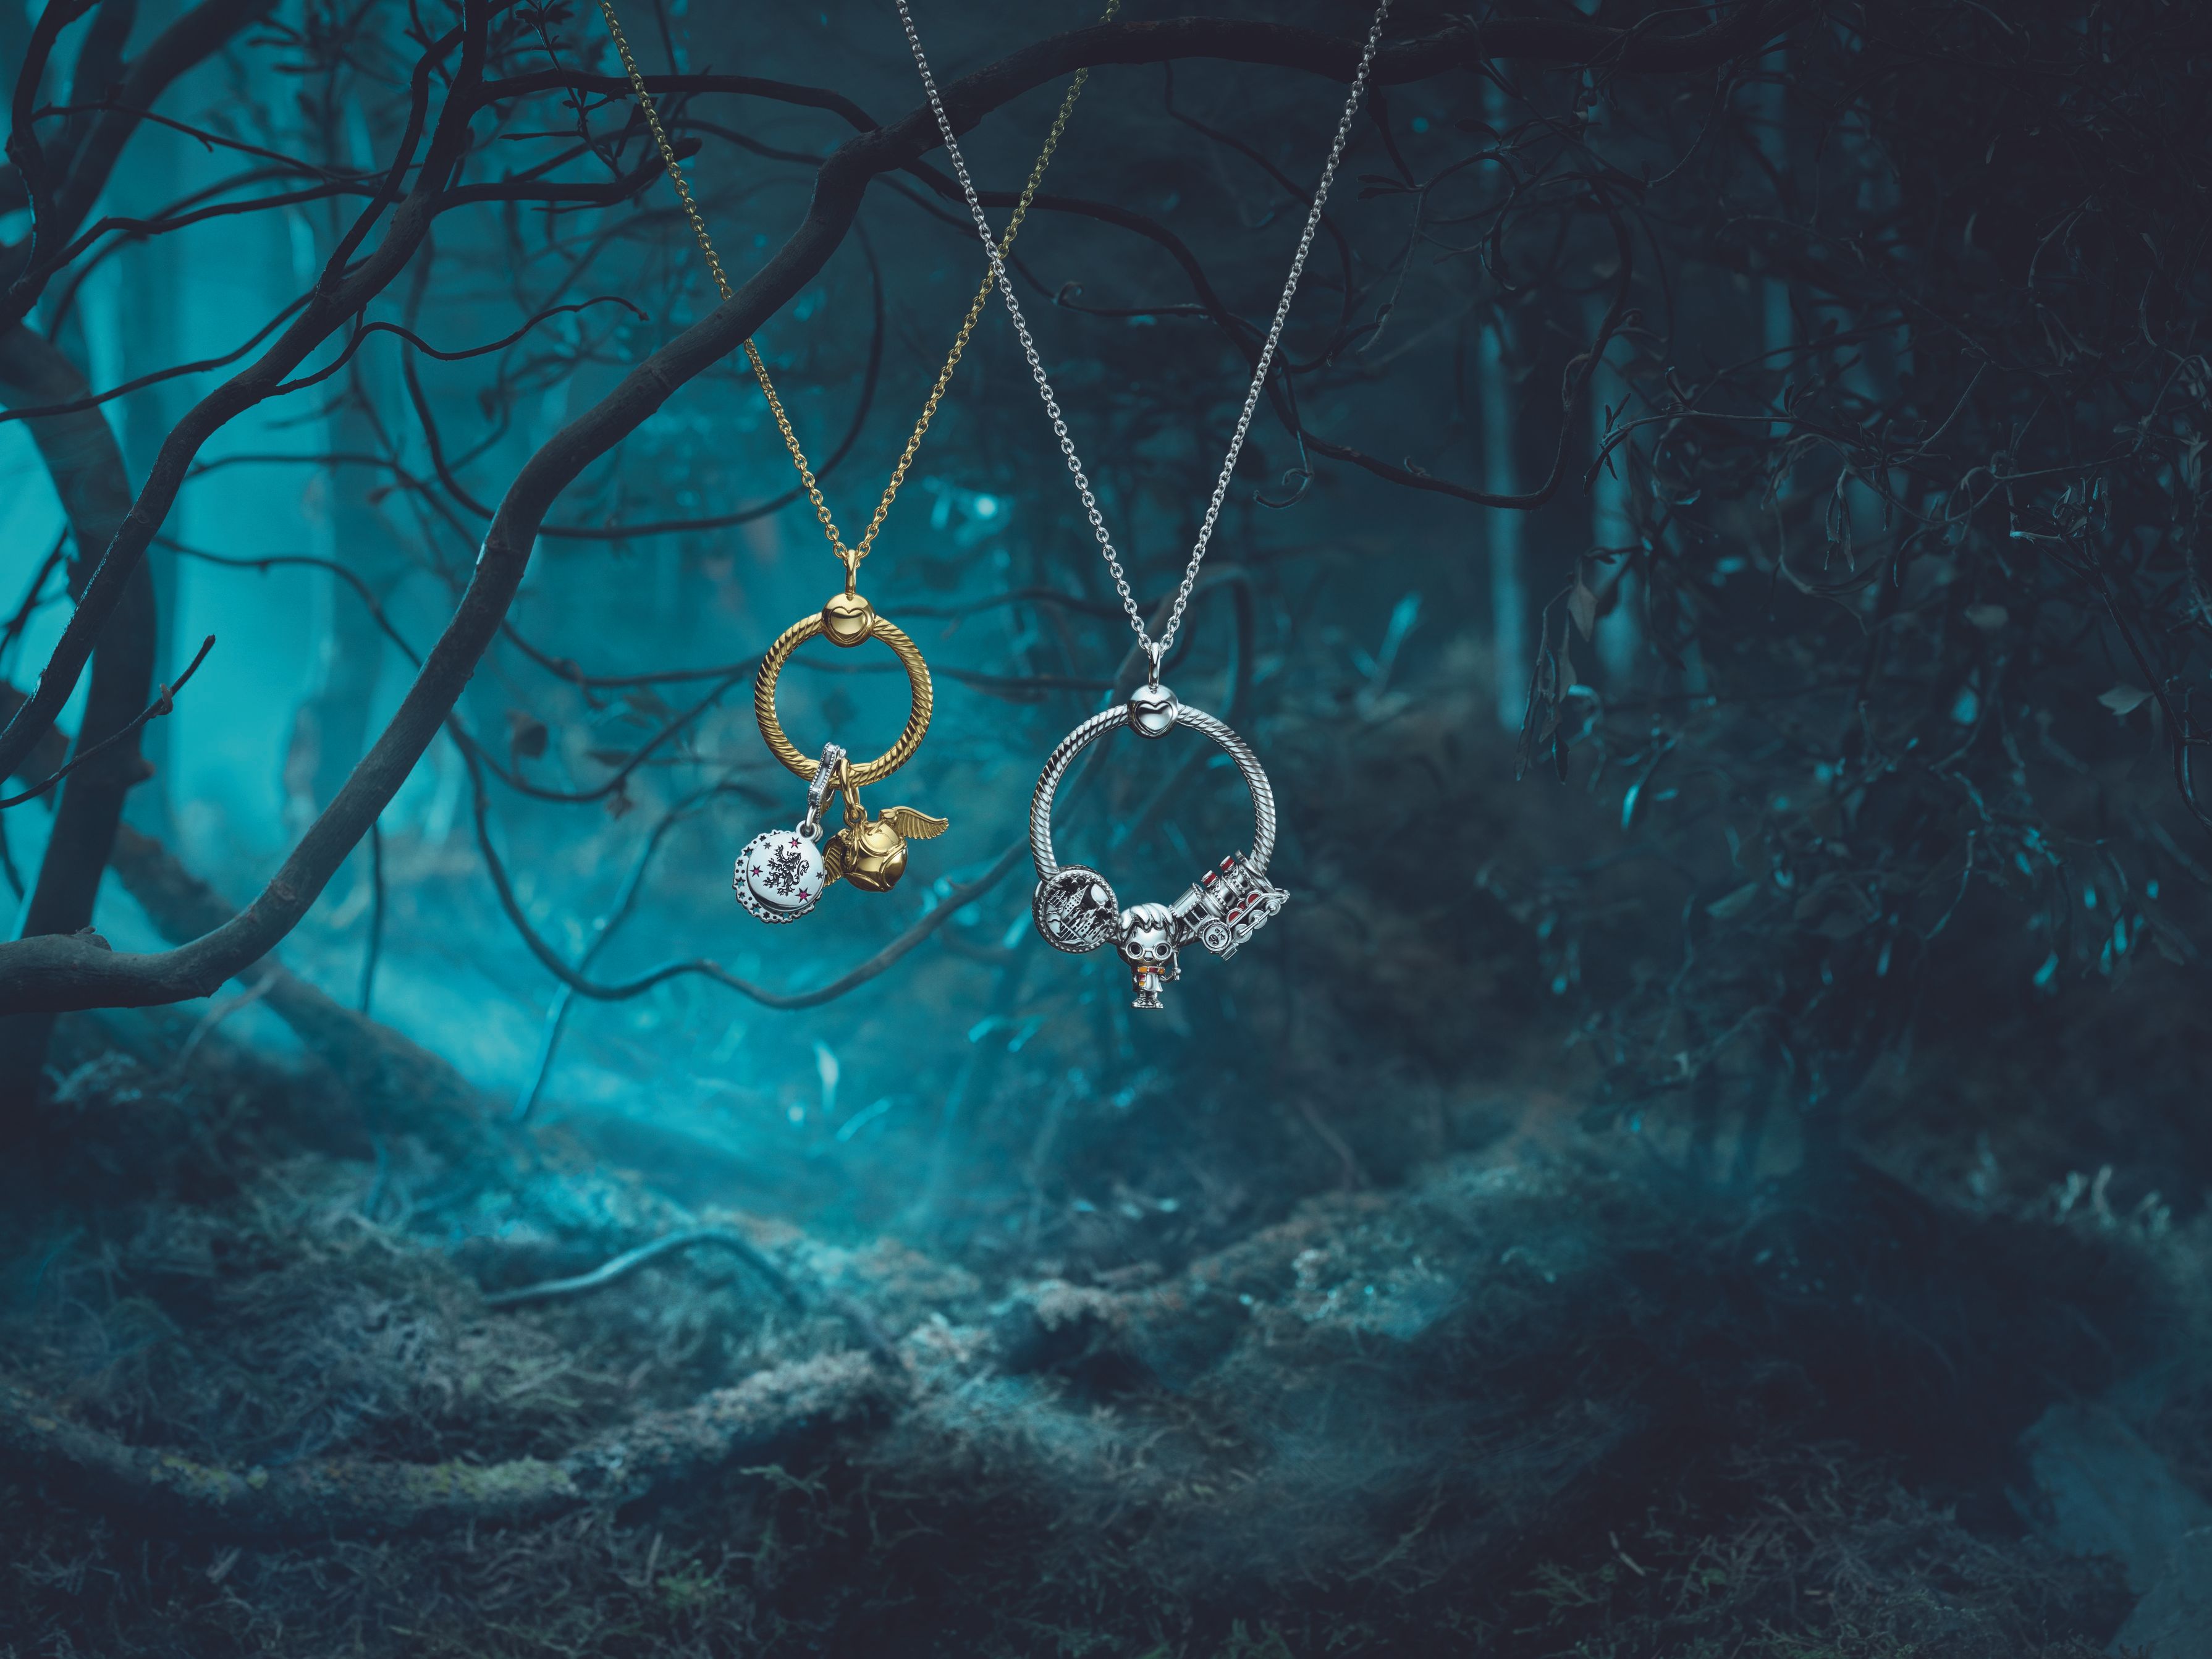 Pandora x Harry Potter: la collab' bijoux la plus magique de l'été